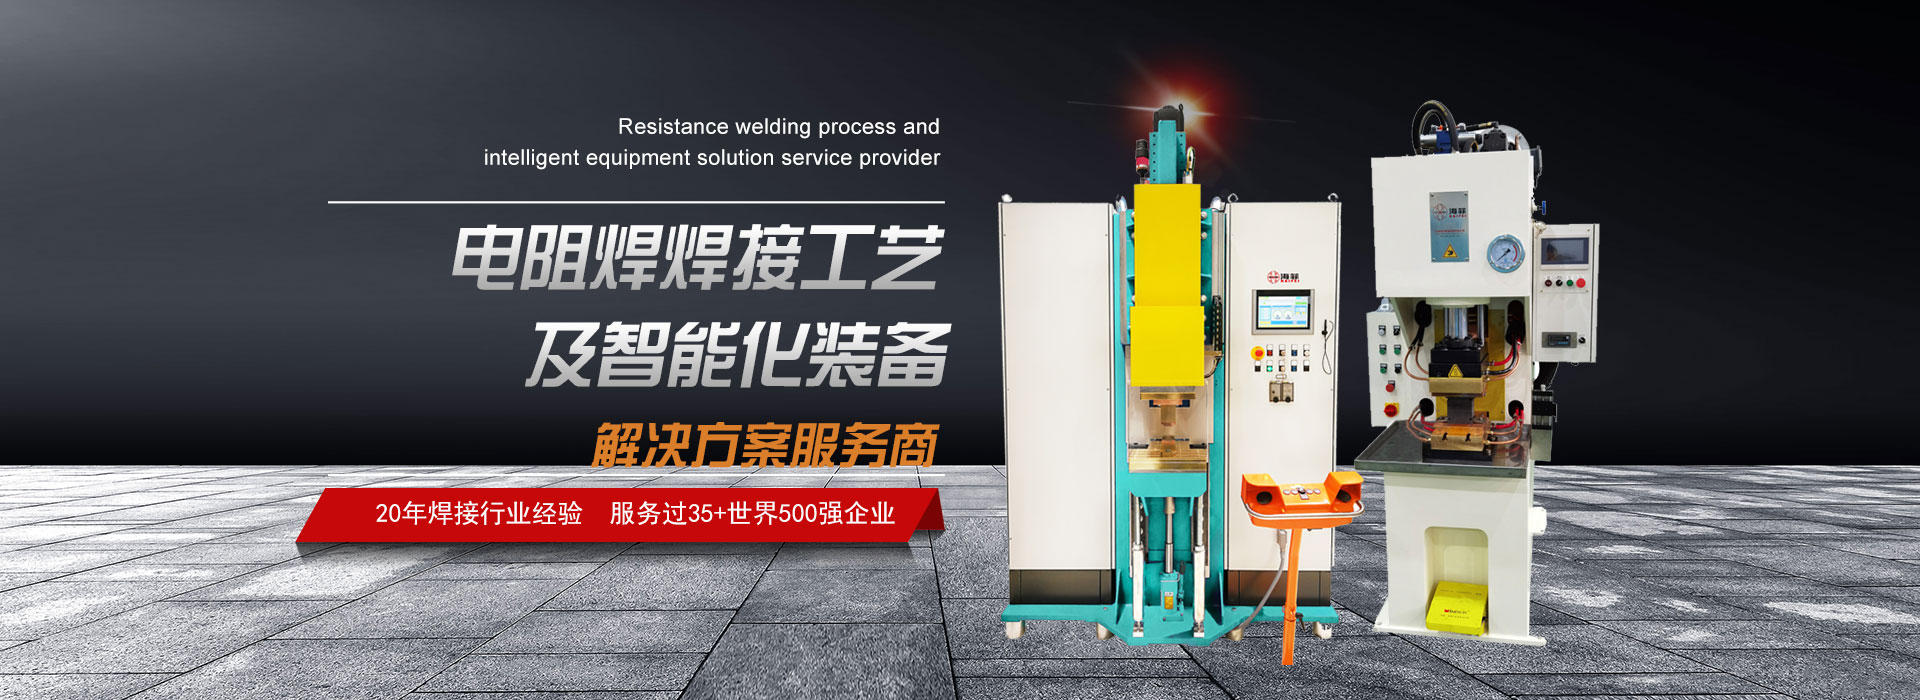 海菲焊接·工业机器人